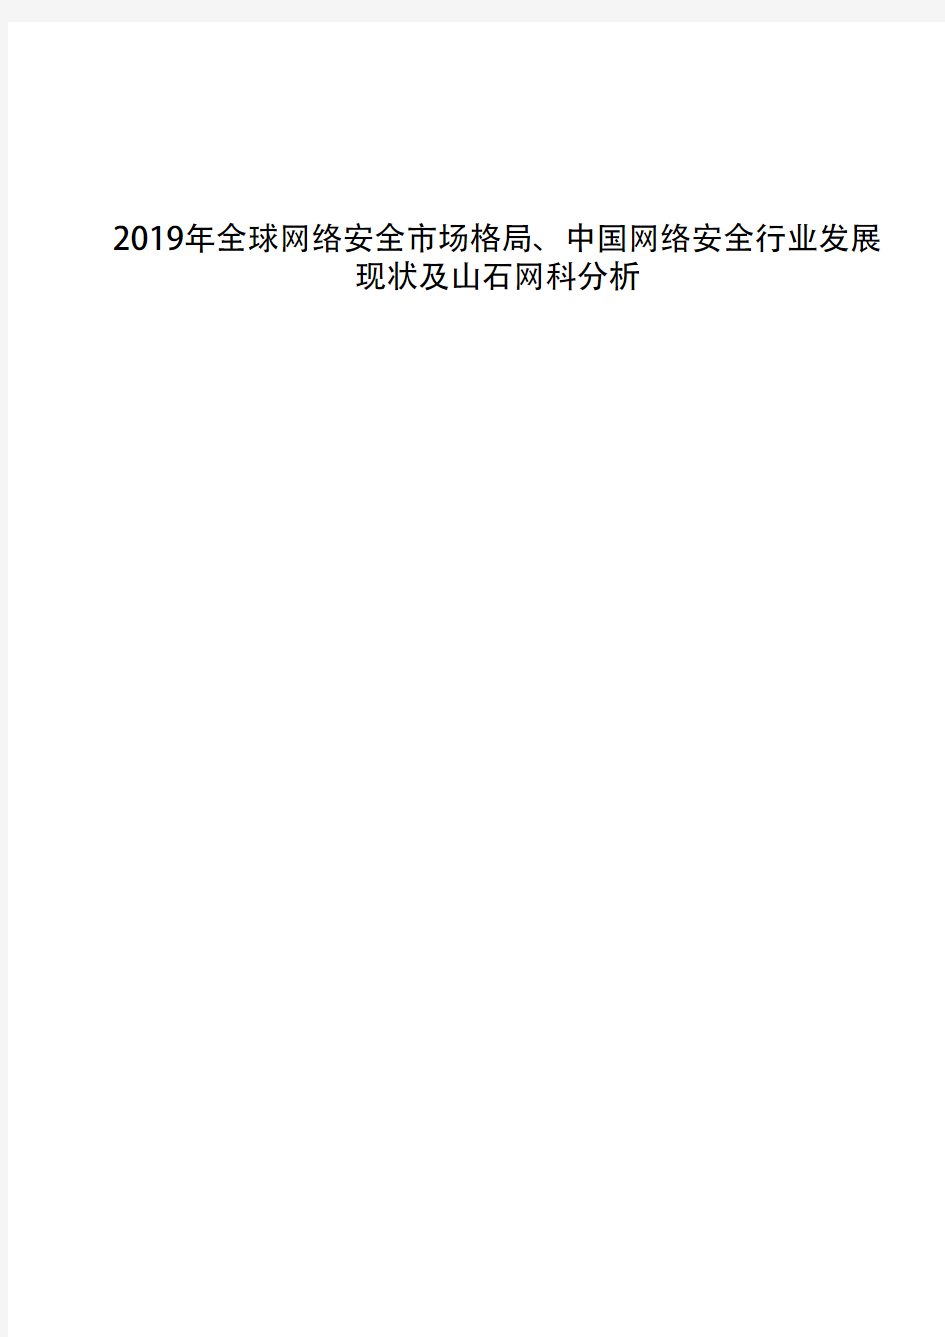 2019年全球网络安全市场格局、中国网络安全行业发展现状及山石网科分析